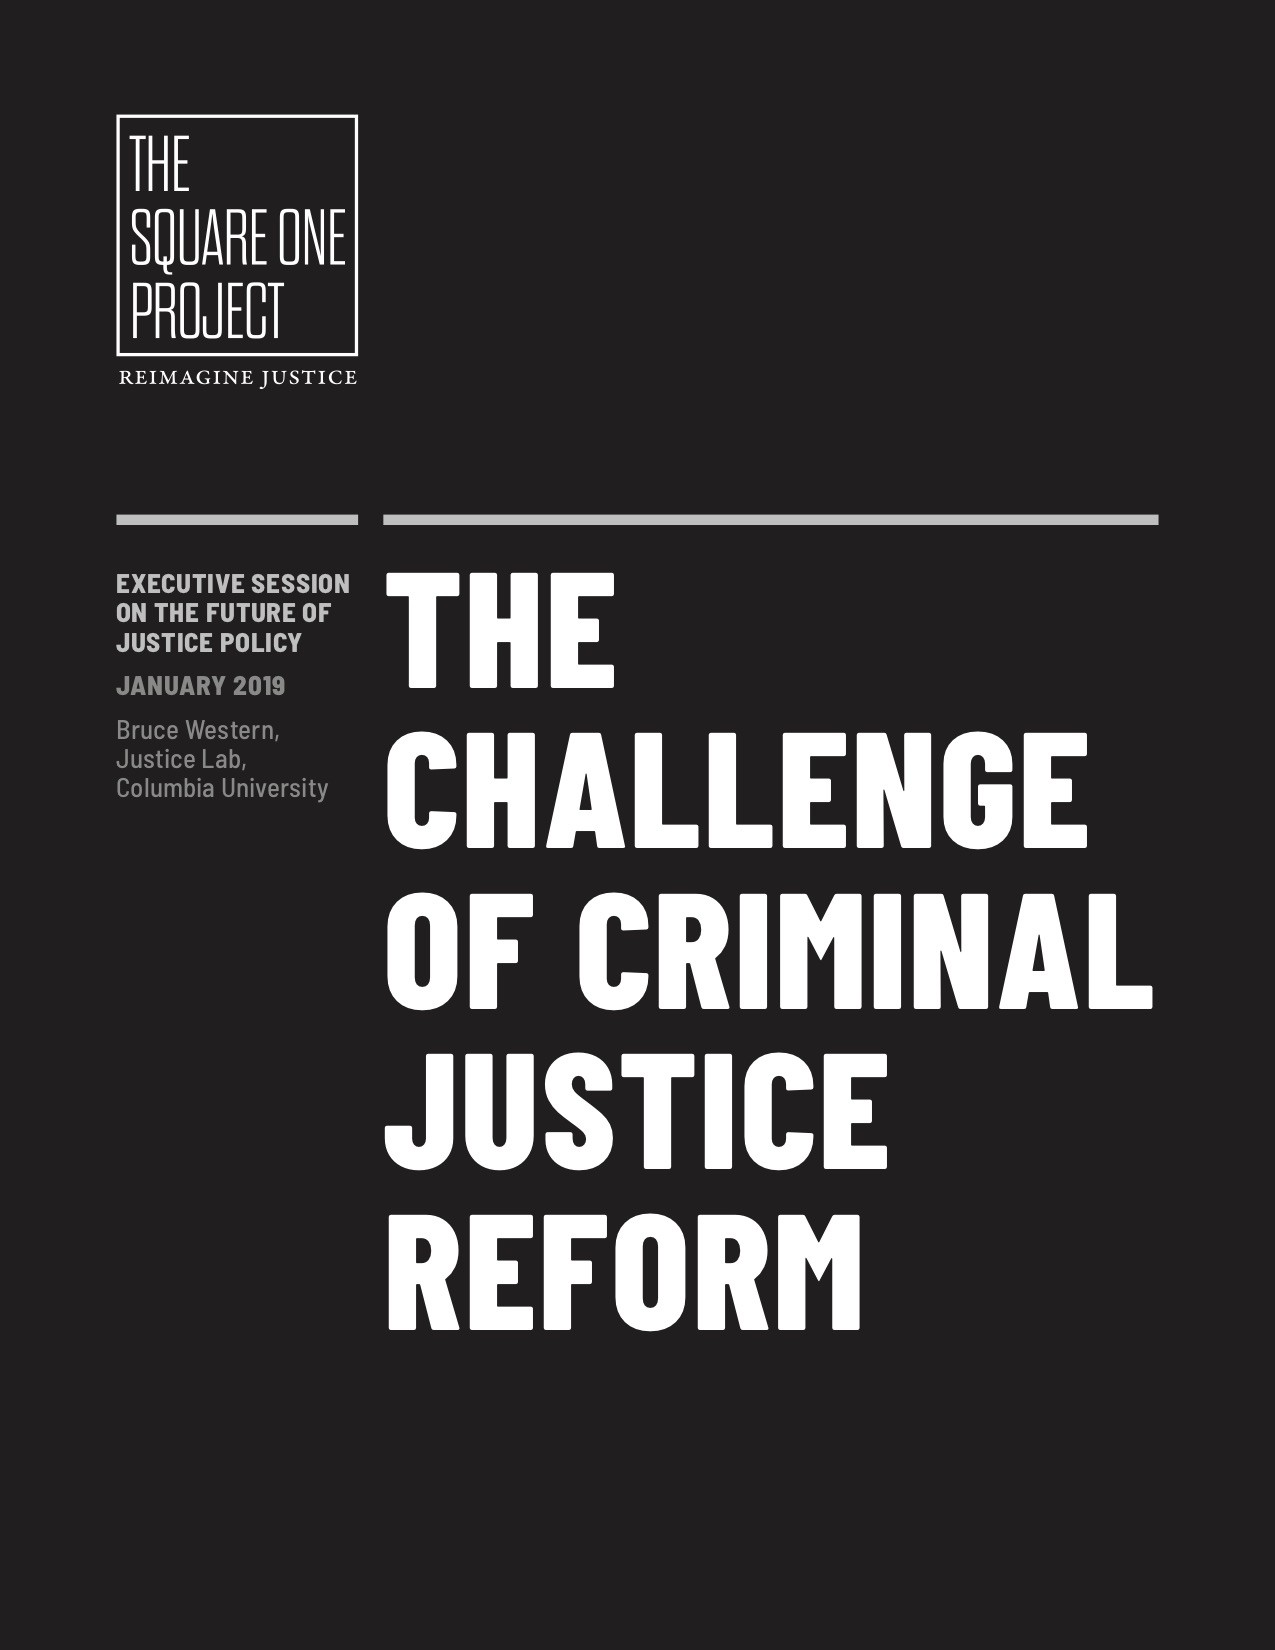 The Challenge of Criminal Justice Reform